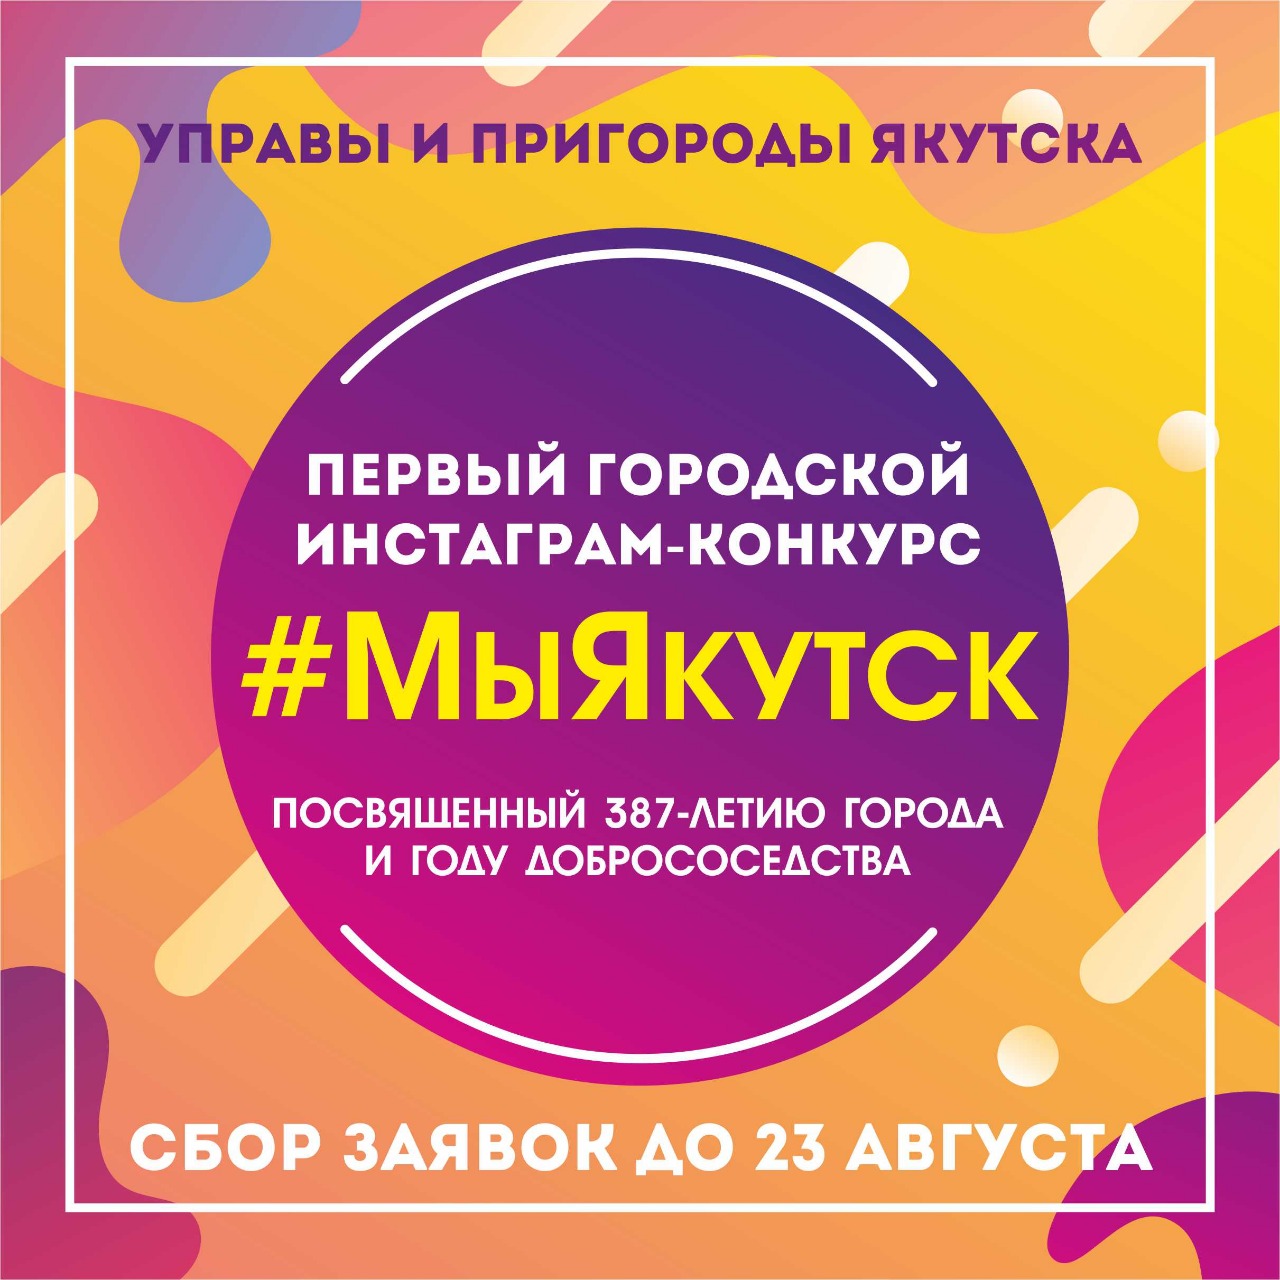 В Якутске проводится первый городской инстаграм-конкурс #МыЯкутск